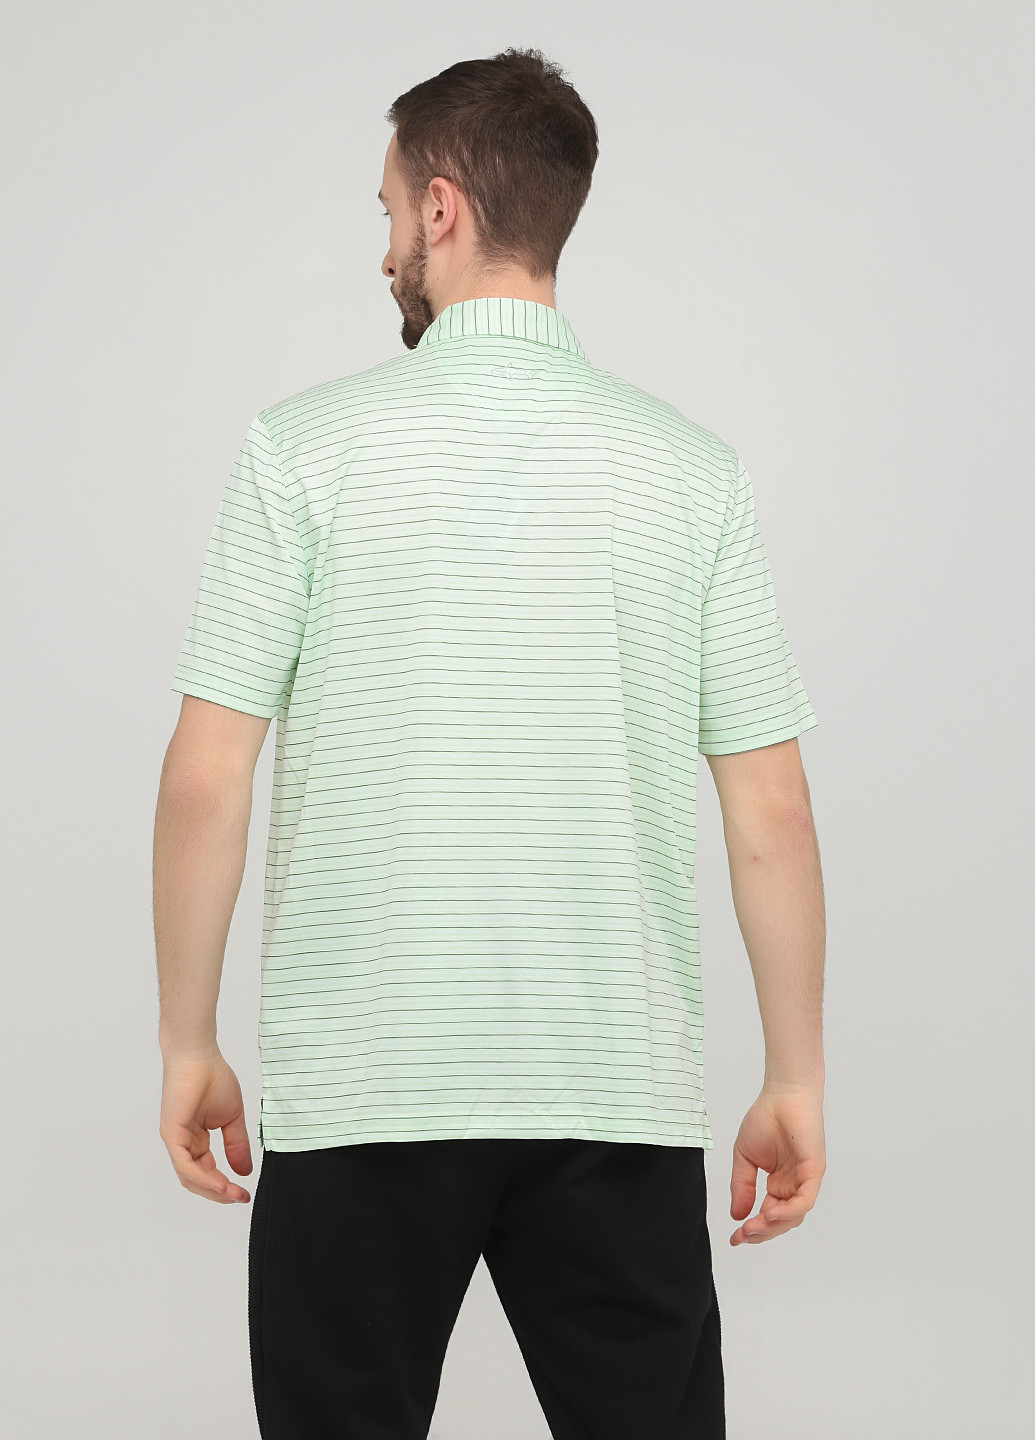 Светло-зеленая футболка-поло для мужчин Greg Norman в полоску